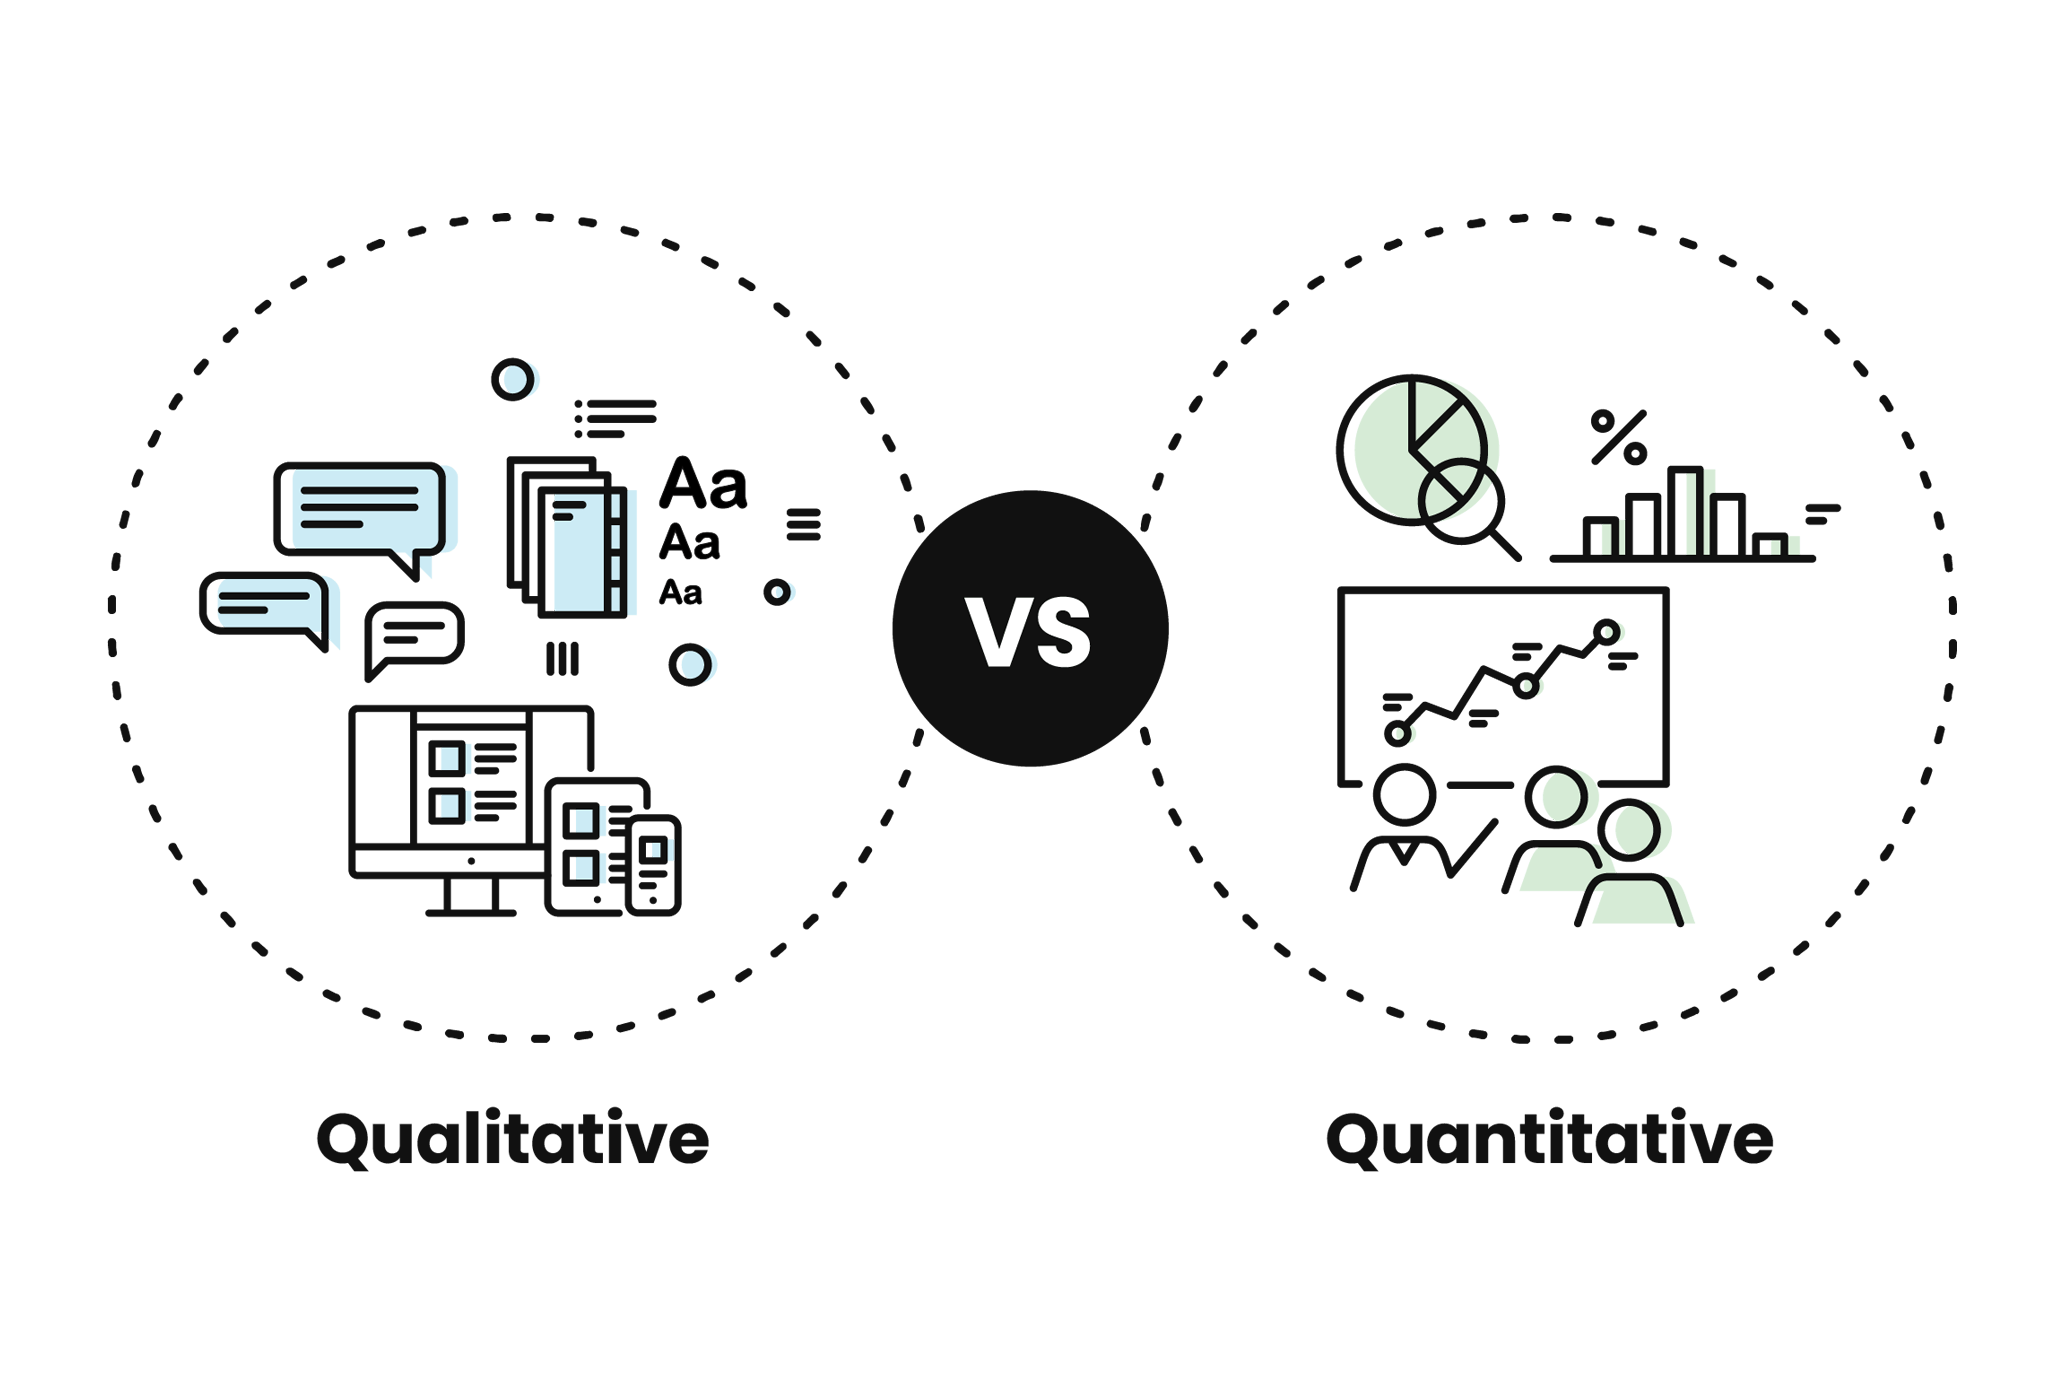 Quantitative vs Qualitative data